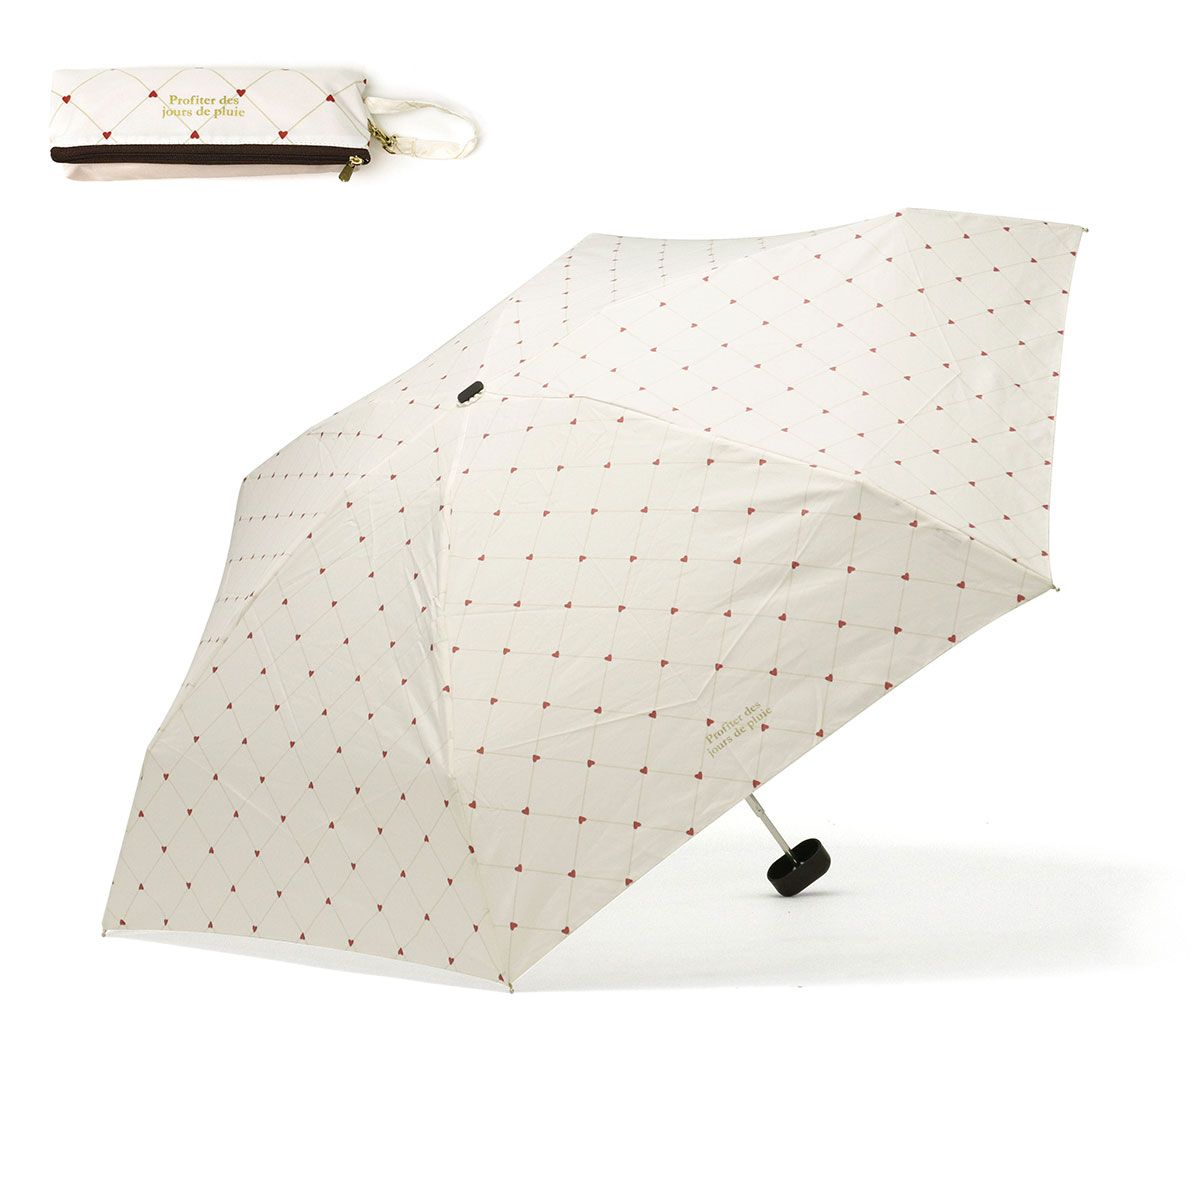 ダブリュピーシー 傘 レディース おしゃれ Wpc. 折りたたみ傘 雨傘 晴雨兼用 軽量 UVカット...